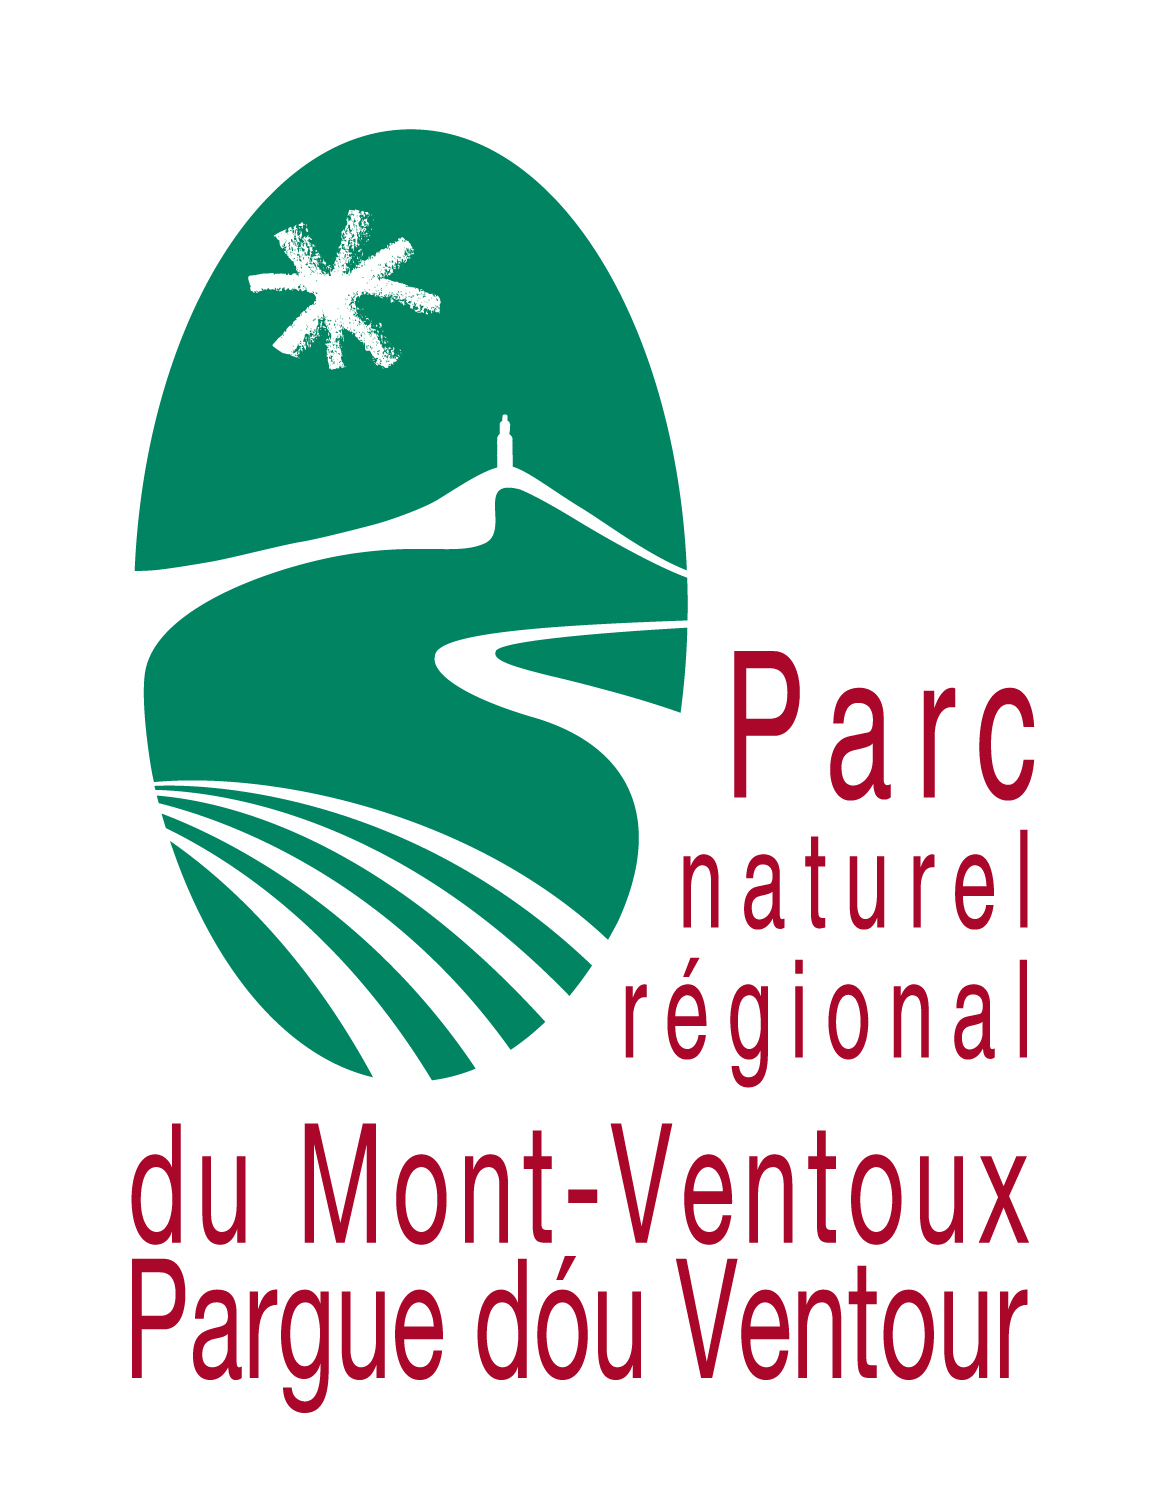 Parc naturel régional du Mont-Ventoux